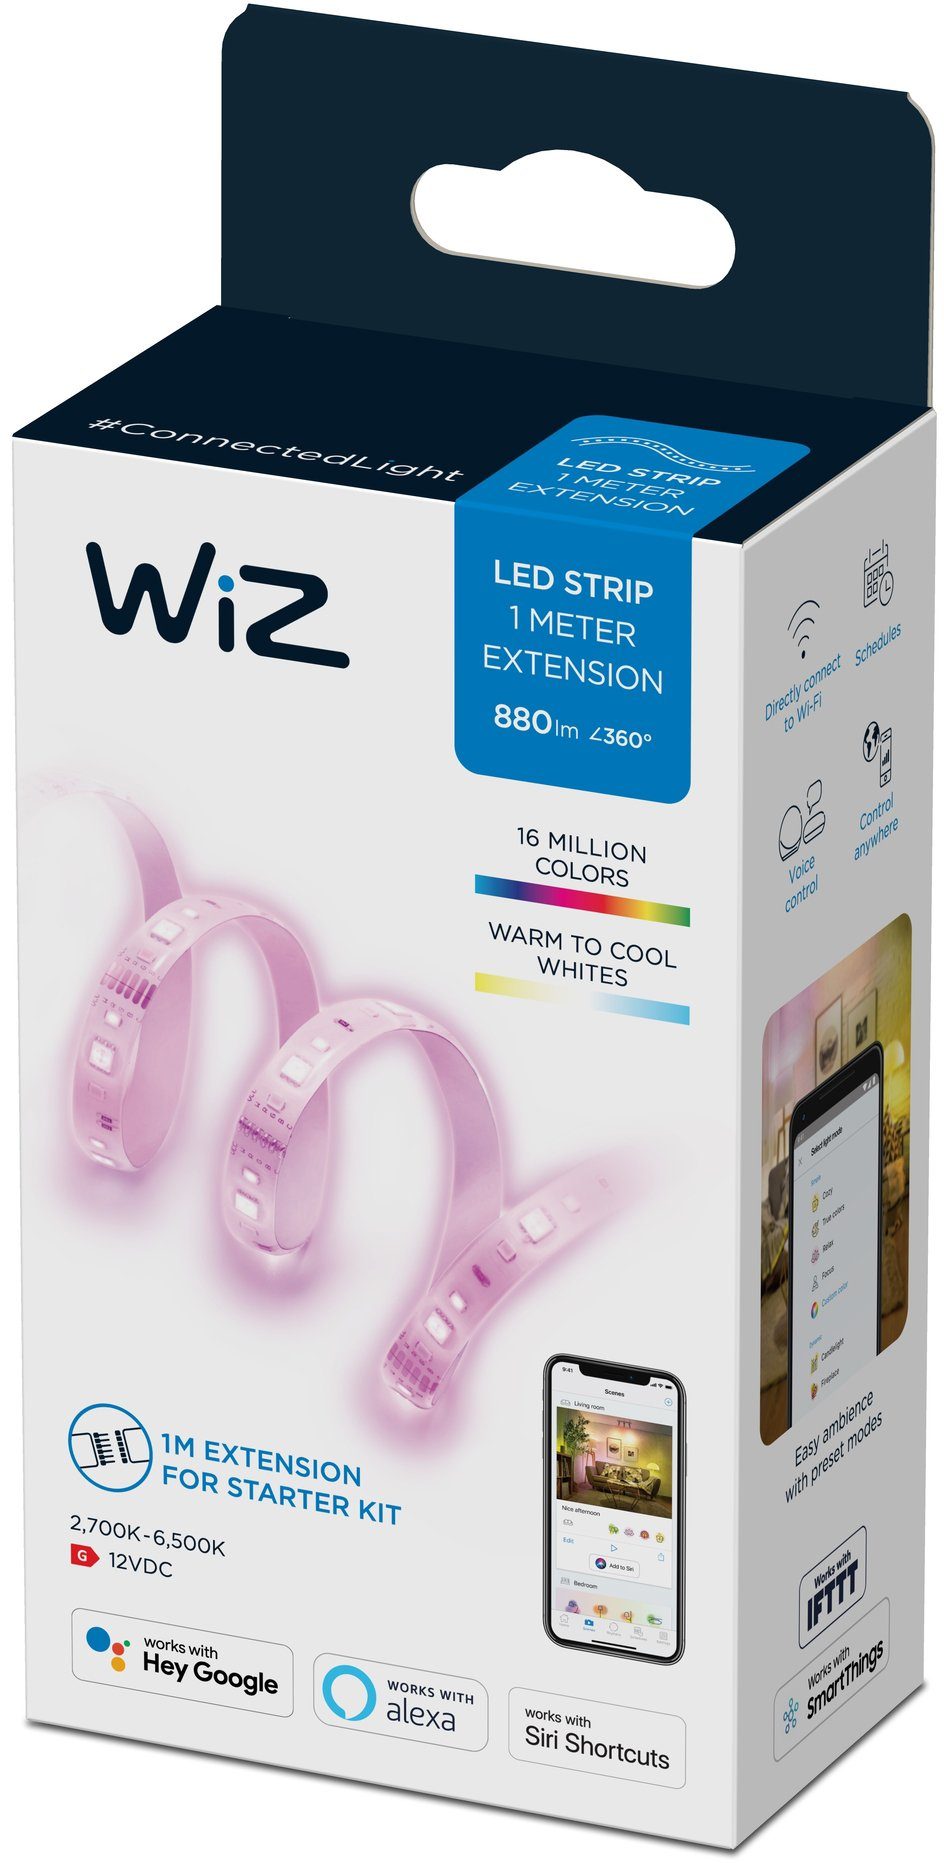 WiZ LED Stripe White&Color Lightstrip 1m Extension 880lm Einzelpack, vielfältiges und flexibles Lichterlebnis für Ihr Zuhause | LED-Stripes